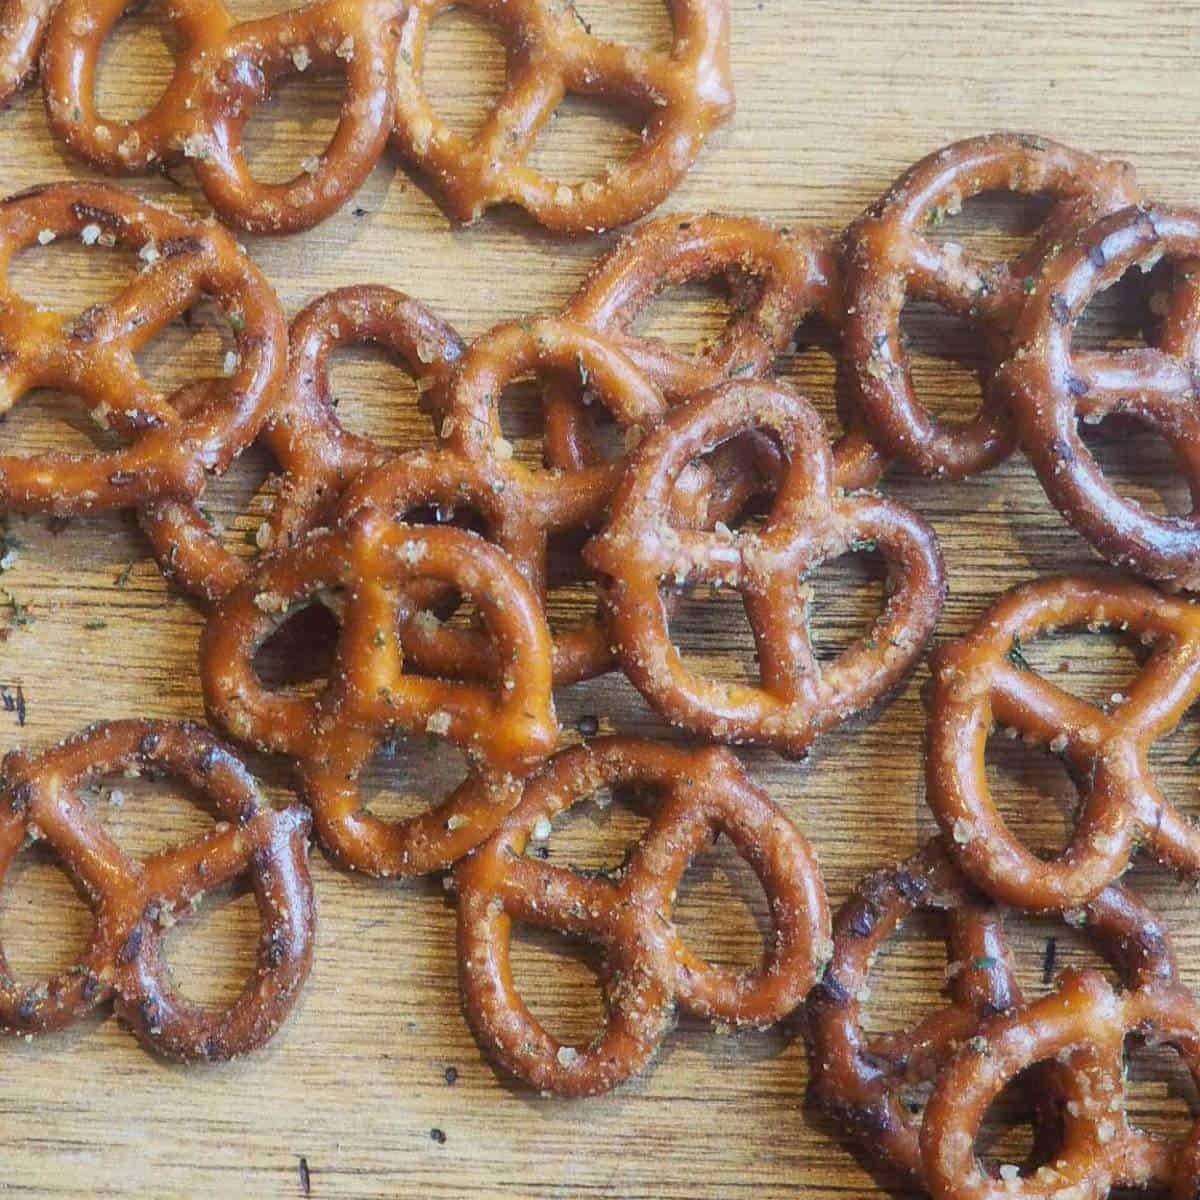 Seasoned pretzels spread out on a wooden board.